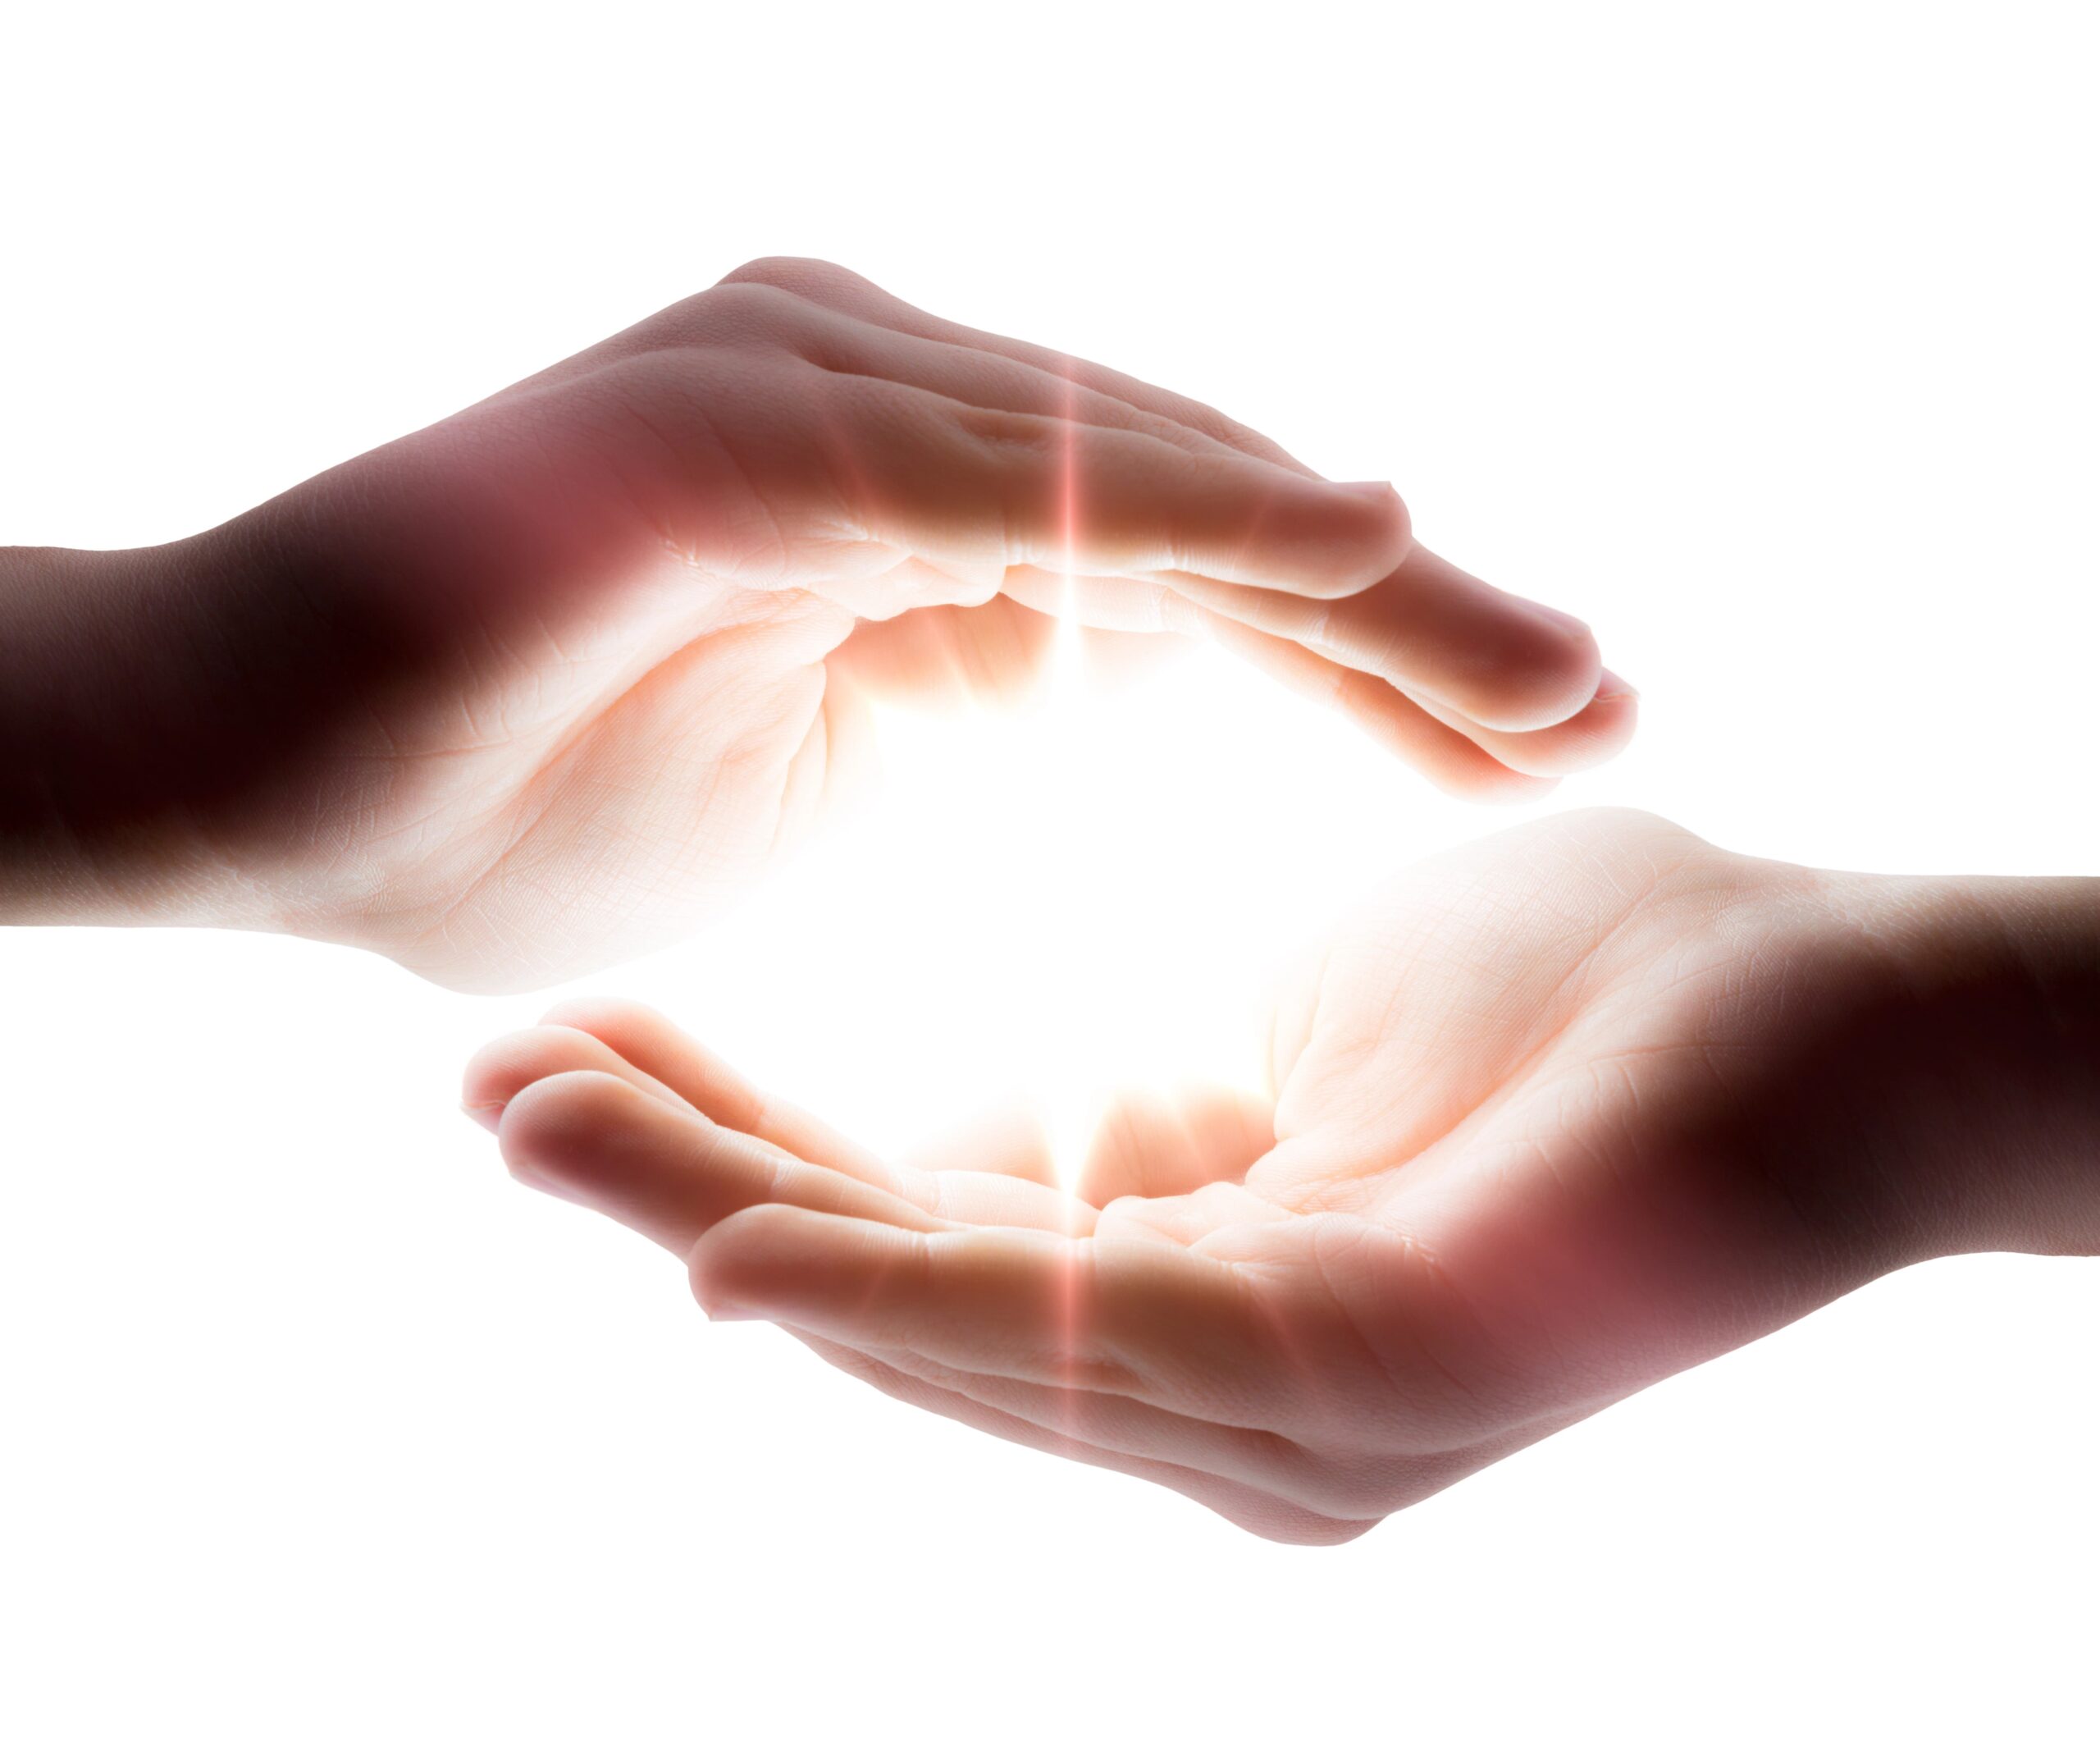 Hands surrounding a ball of light